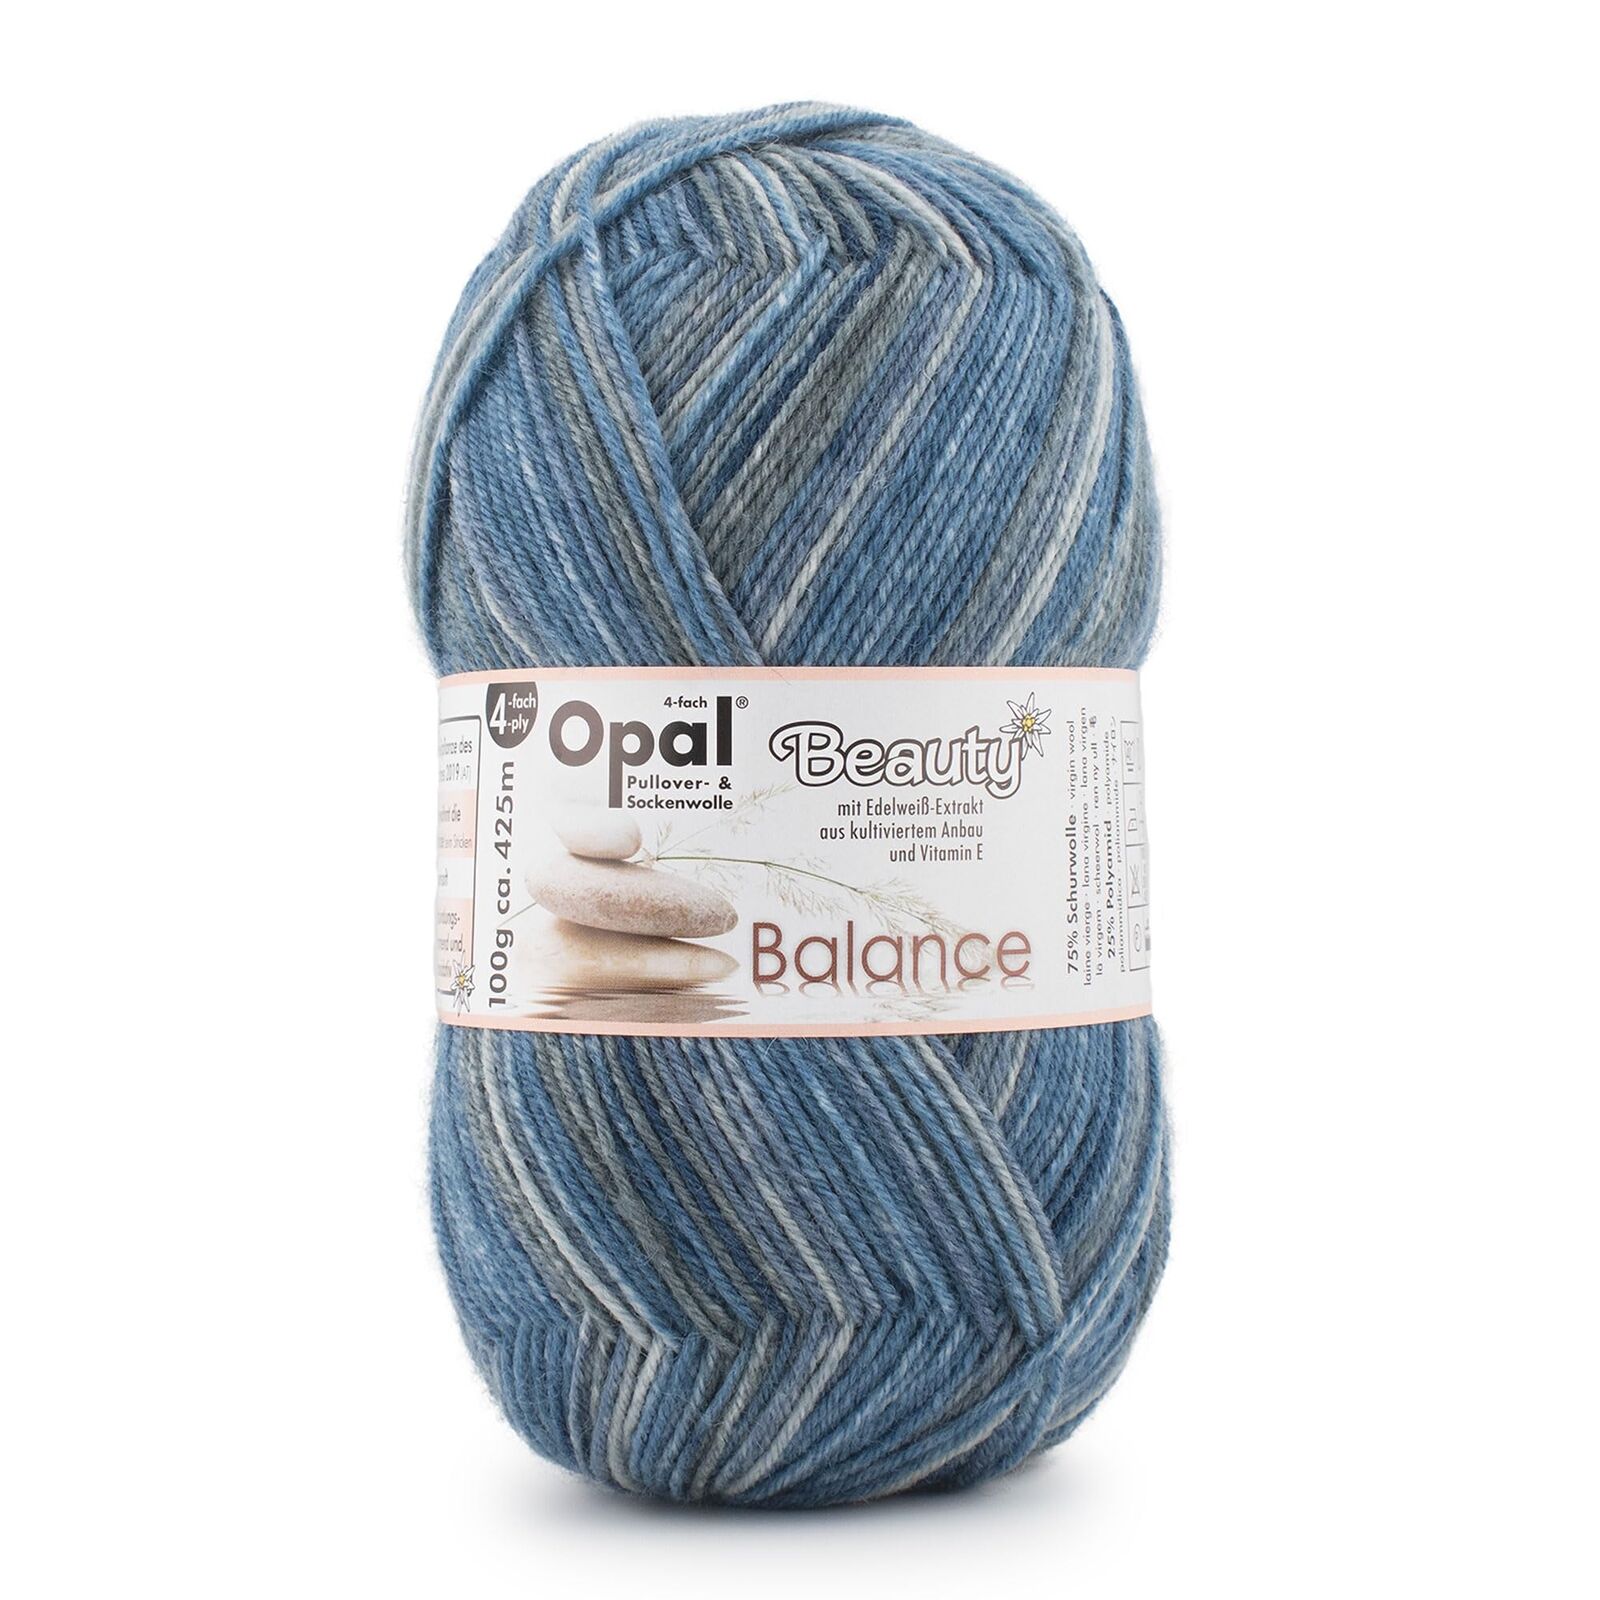 Yarn Sock Yarn Opal Beauty4 4ply (4 strands twisted) Wool blend 11401.Scenery